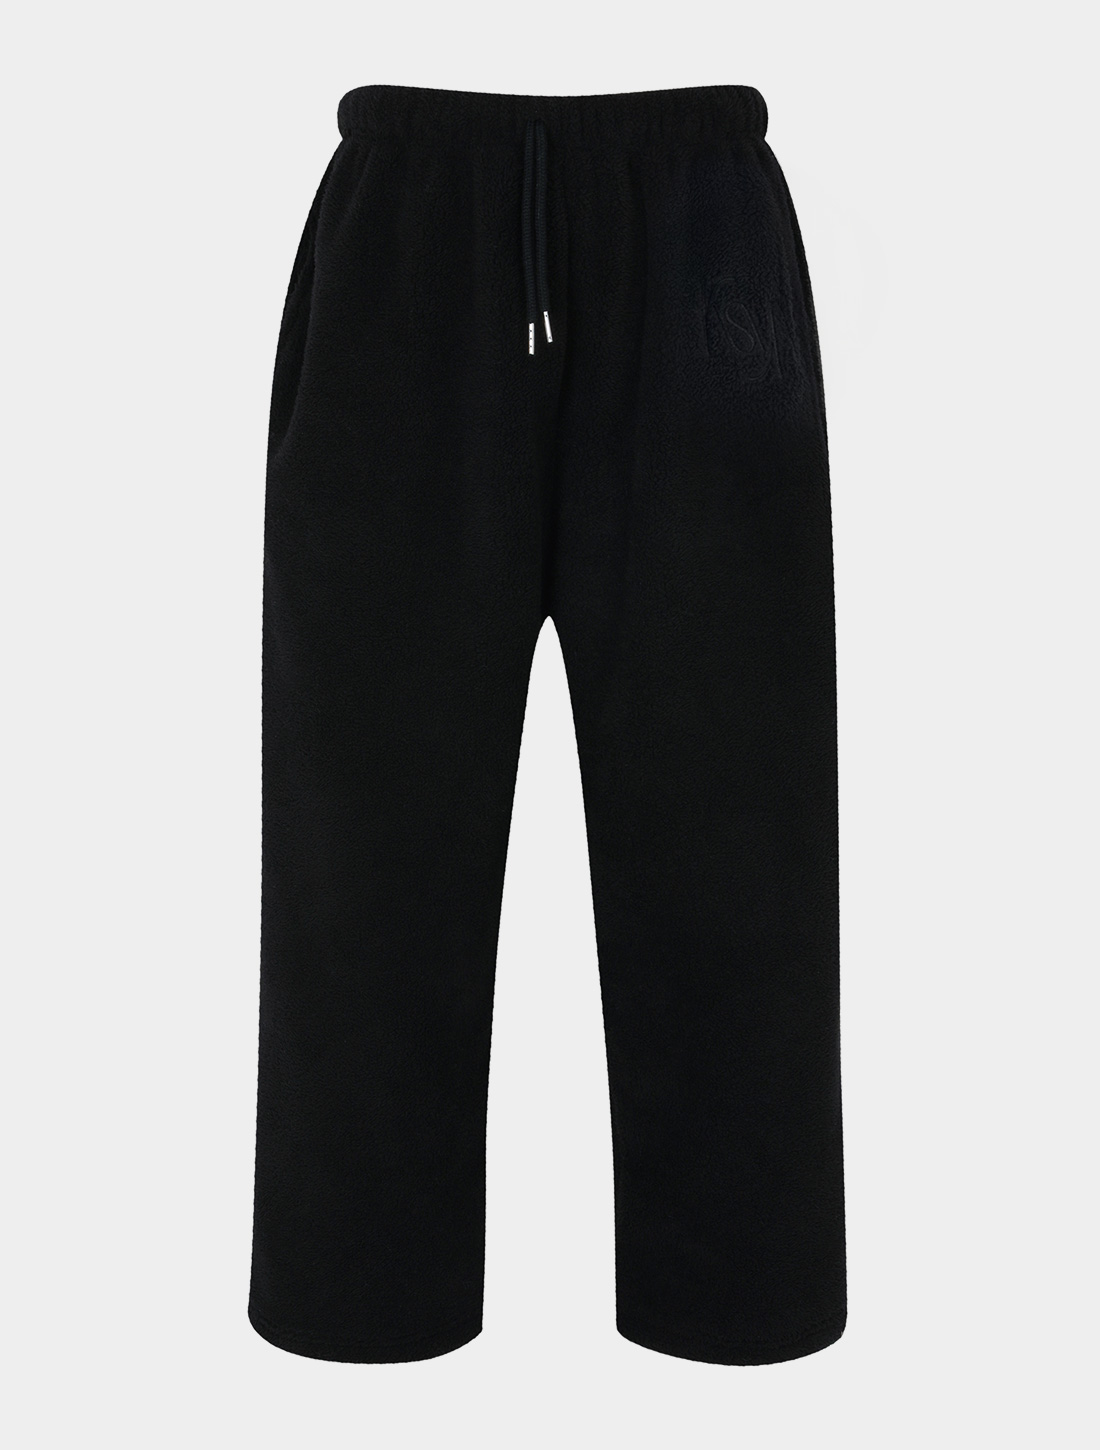 FUSE fleece jogger pants (black)